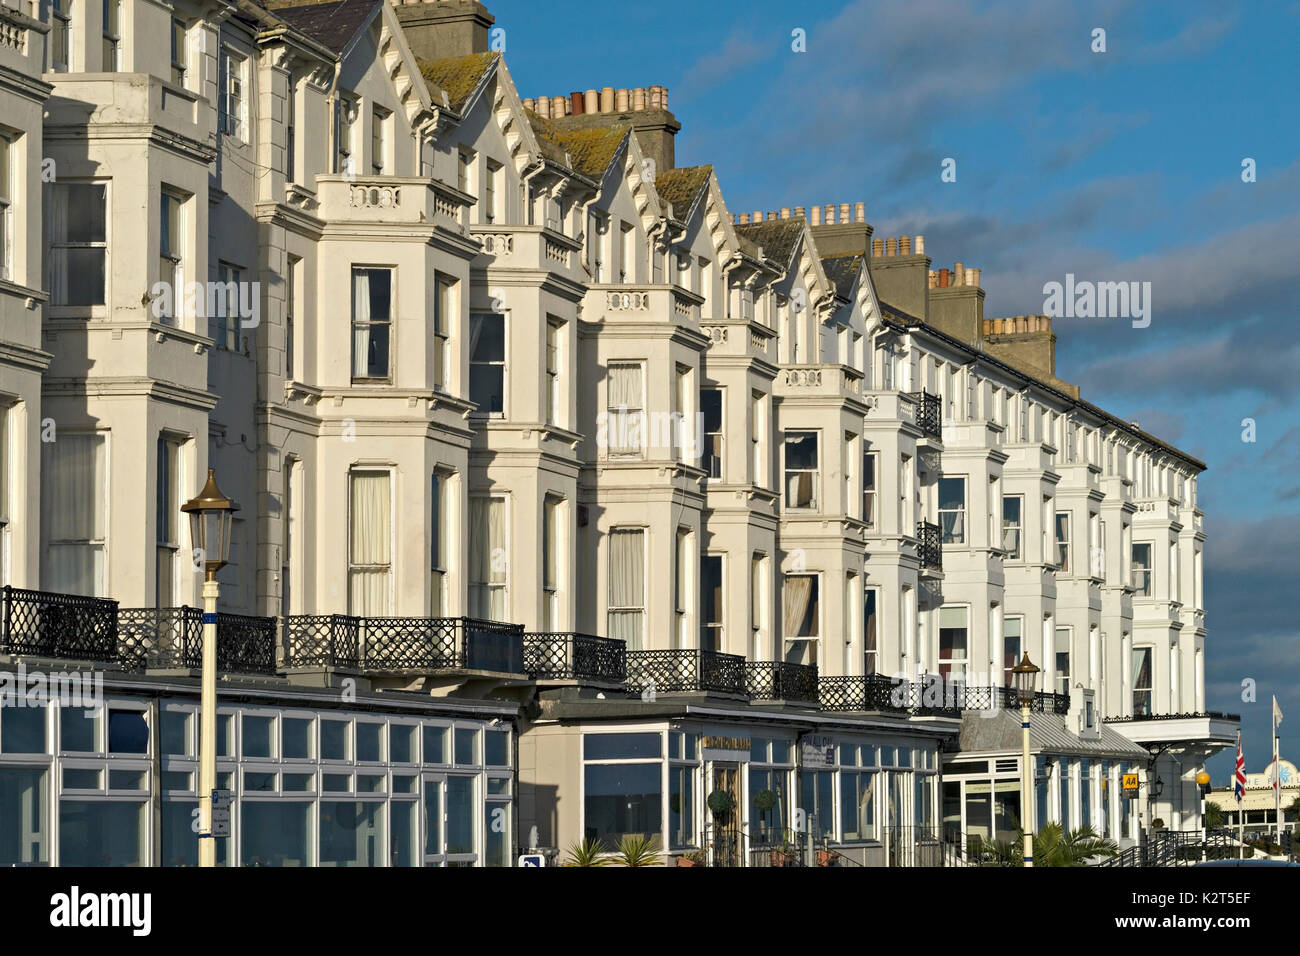 L'architecture victorienne de l'Hilton Royal Parade Hotel (maintenant l'hôtel Strand), Eastbourne, East Sussex, England, UK Banque D'Images